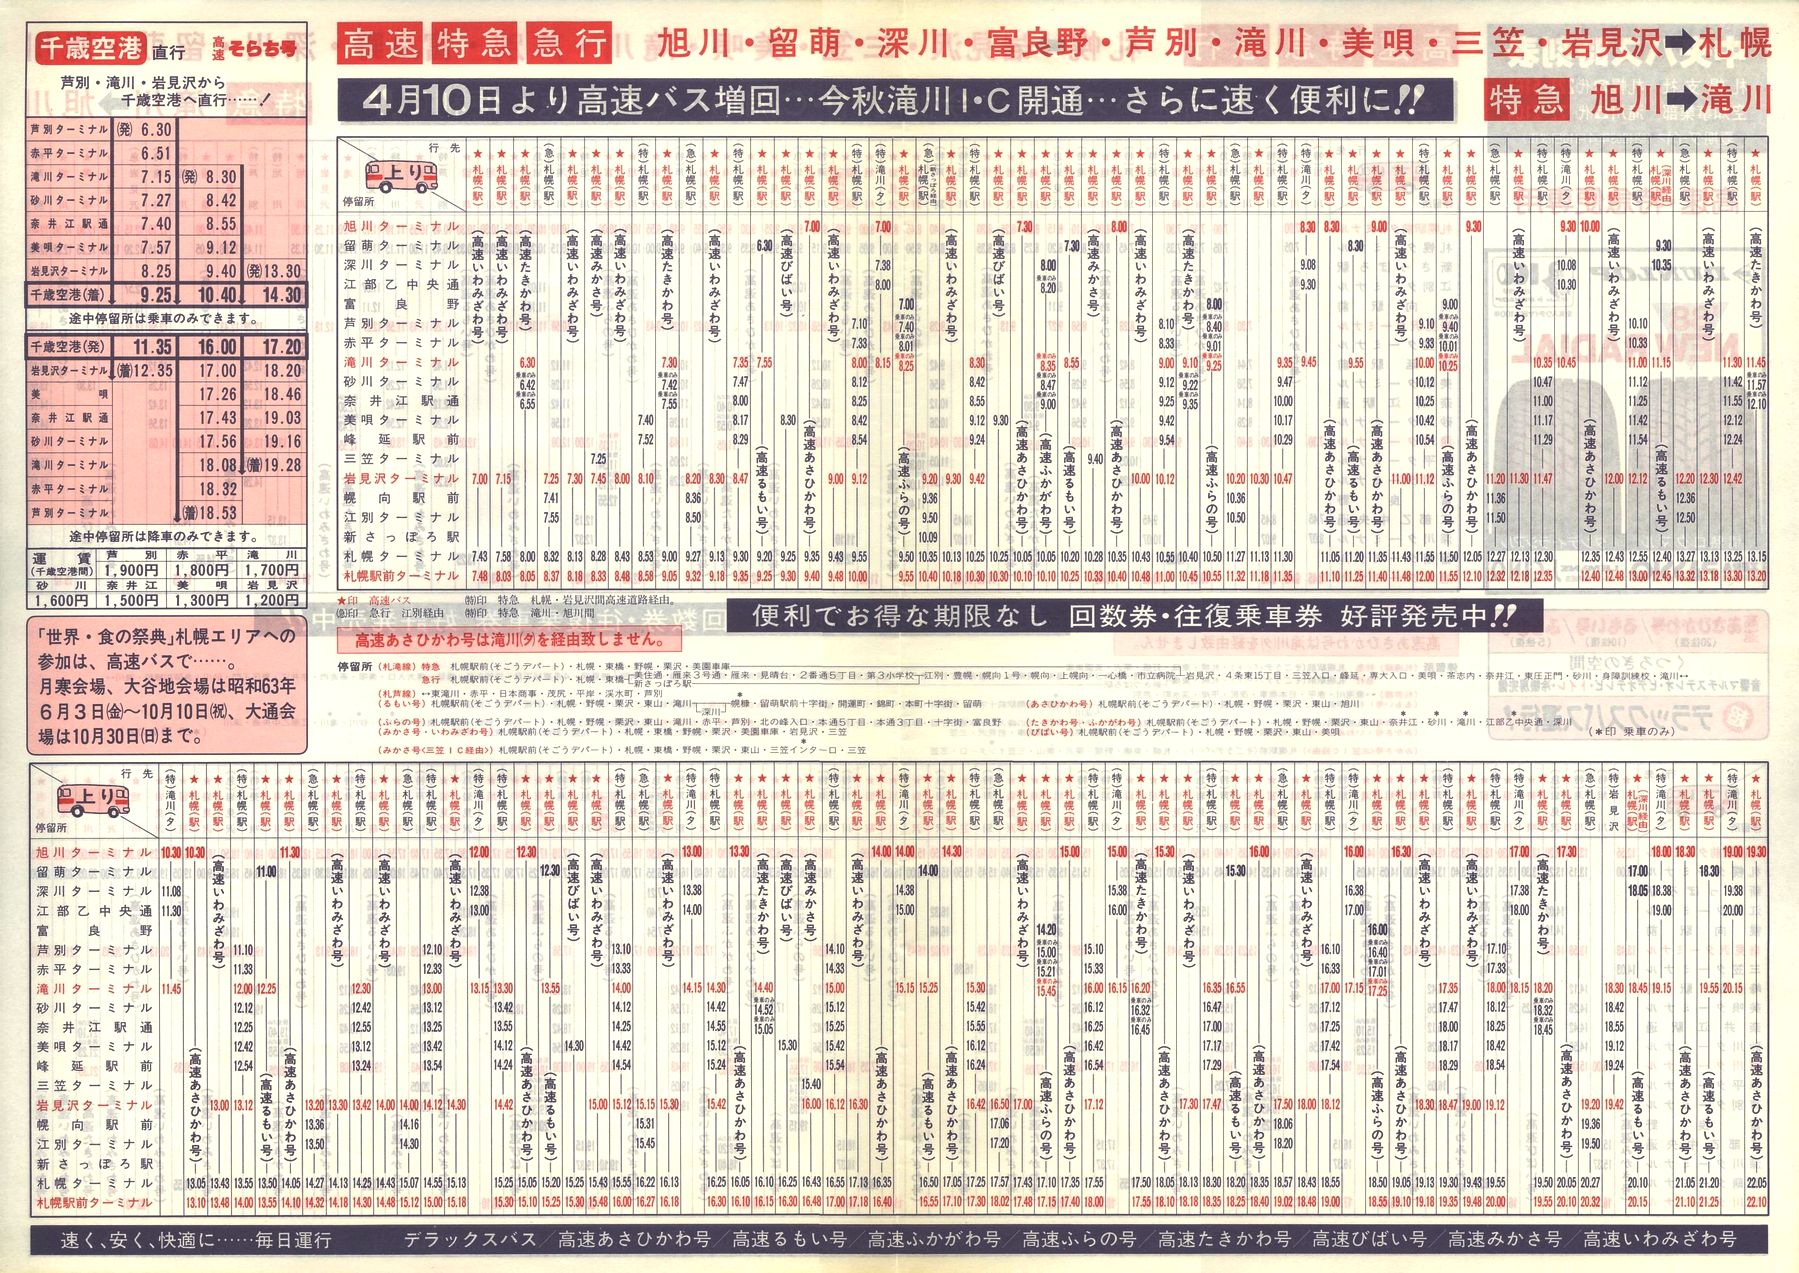 1988-04-10改正_北海道中央バス(空知)_高速特急便時刻表裏面